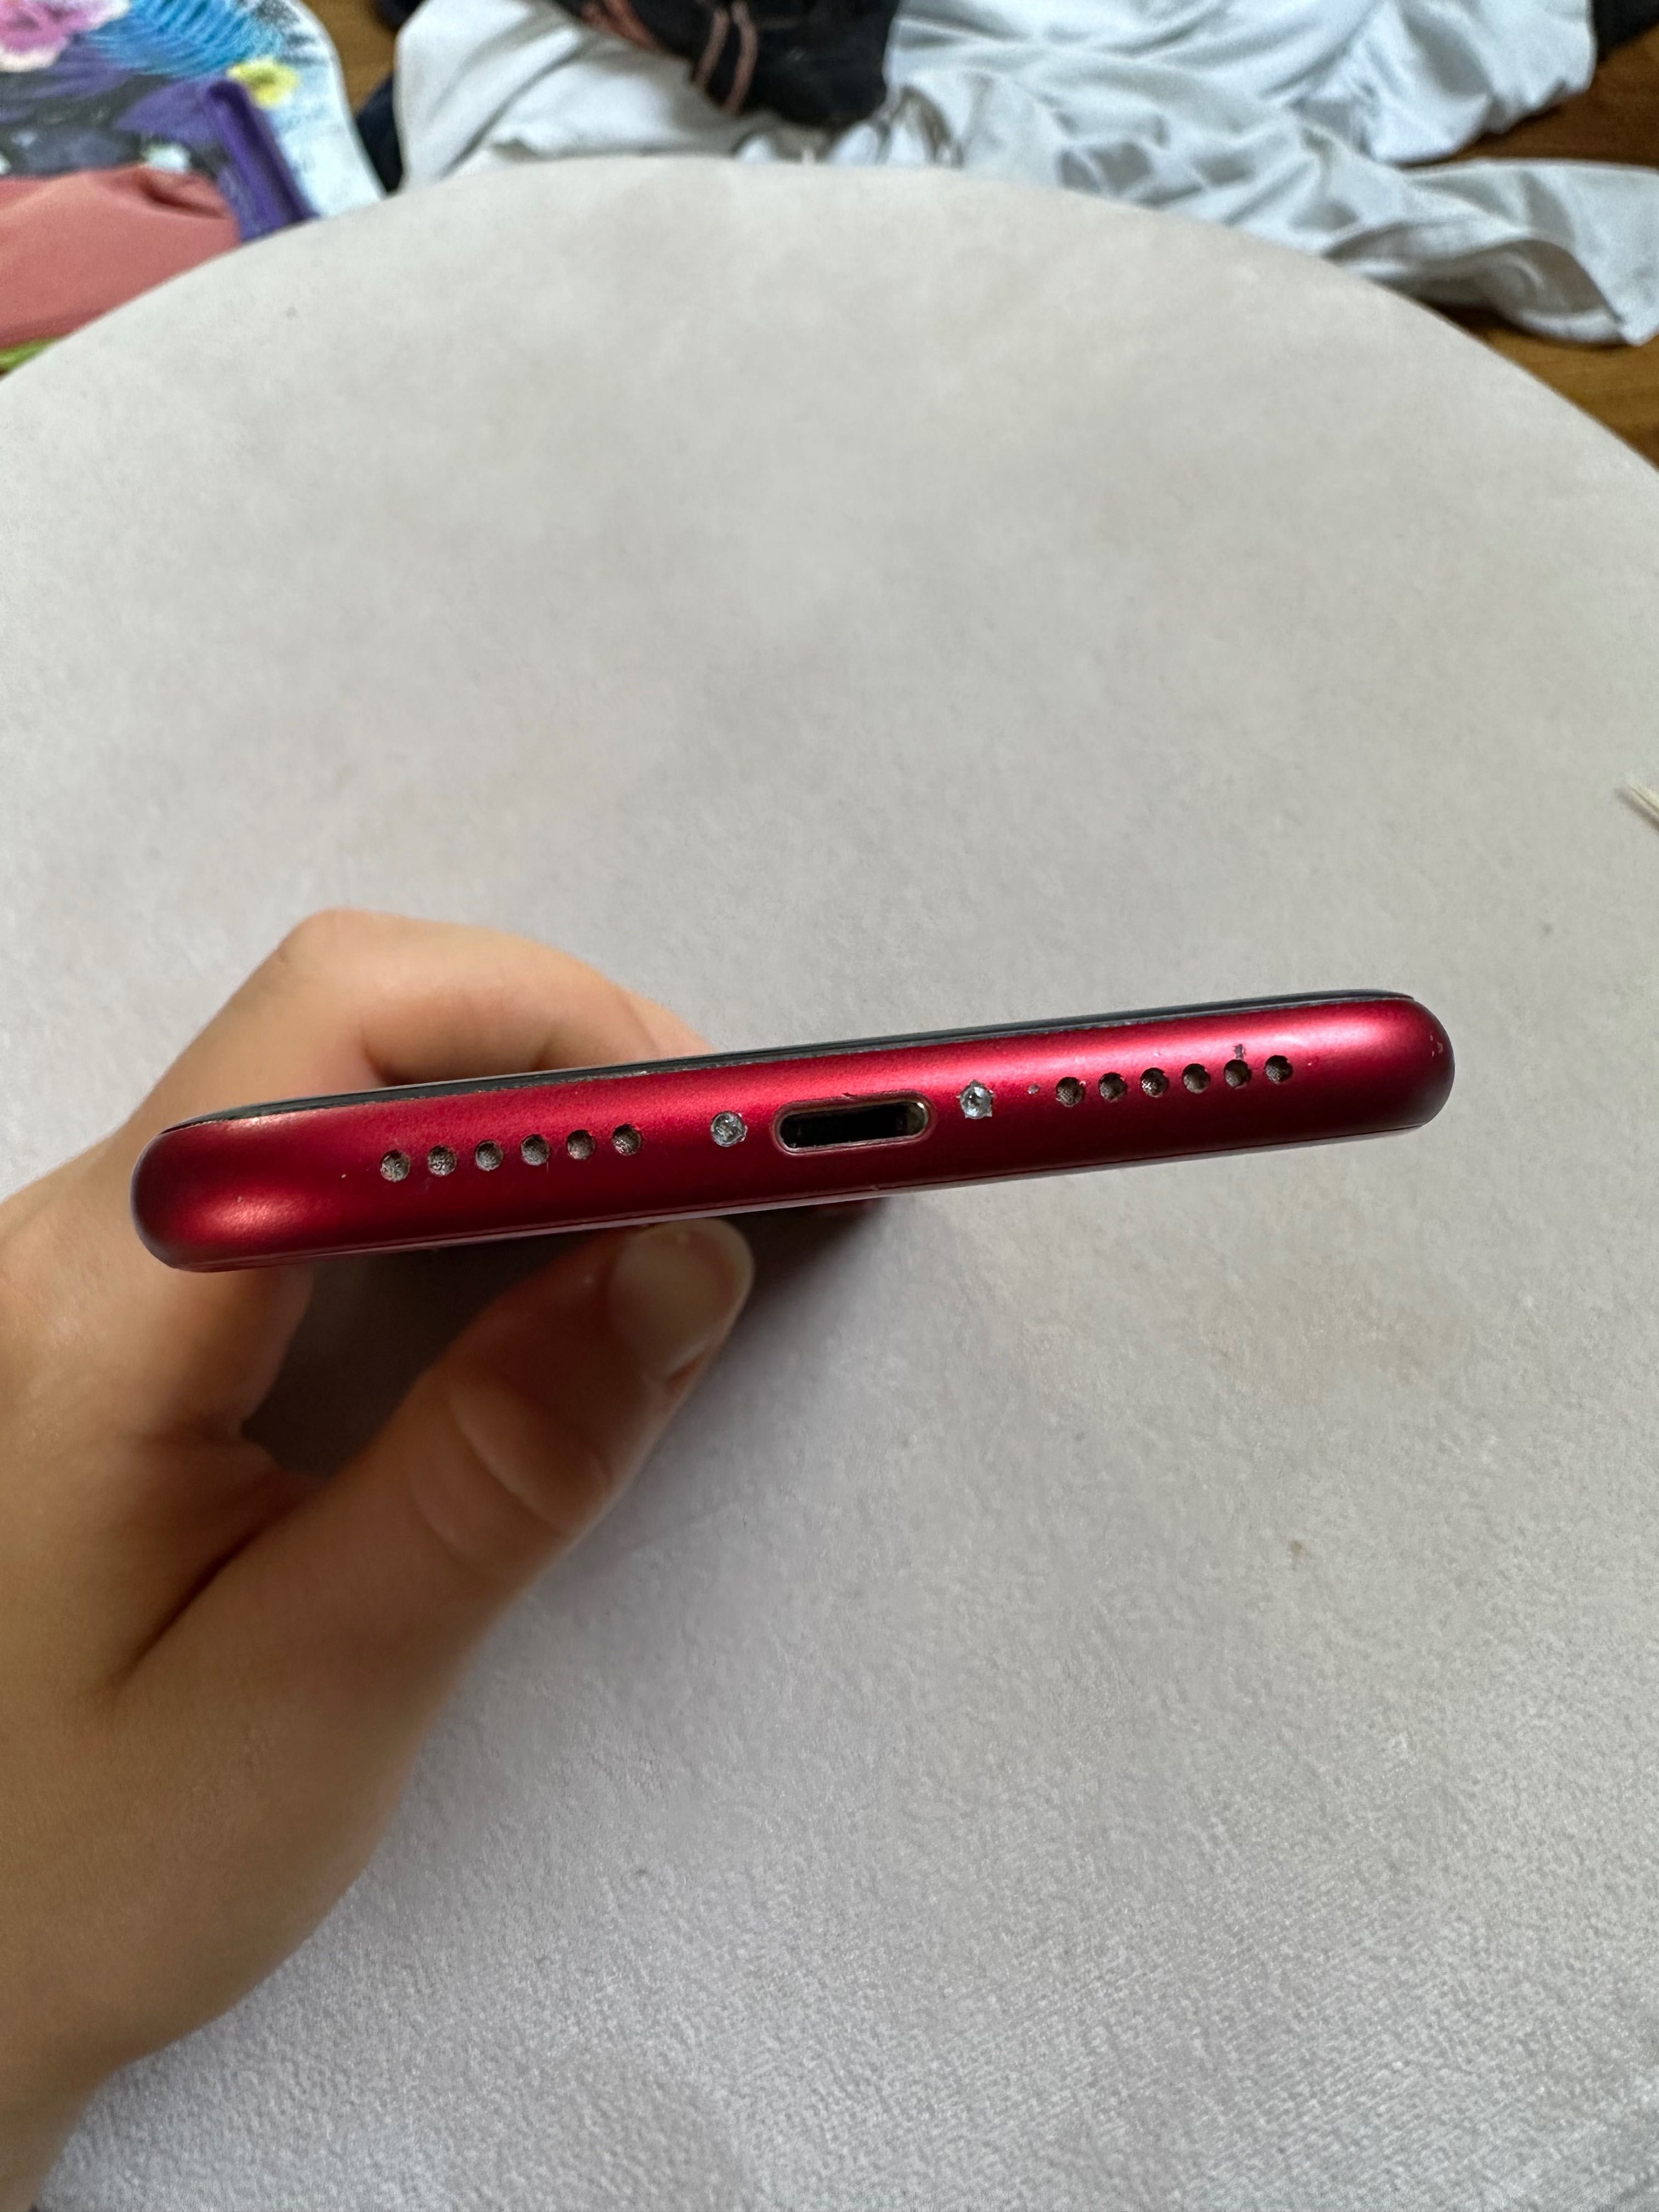 iPhone XR product red czerwony 64GB